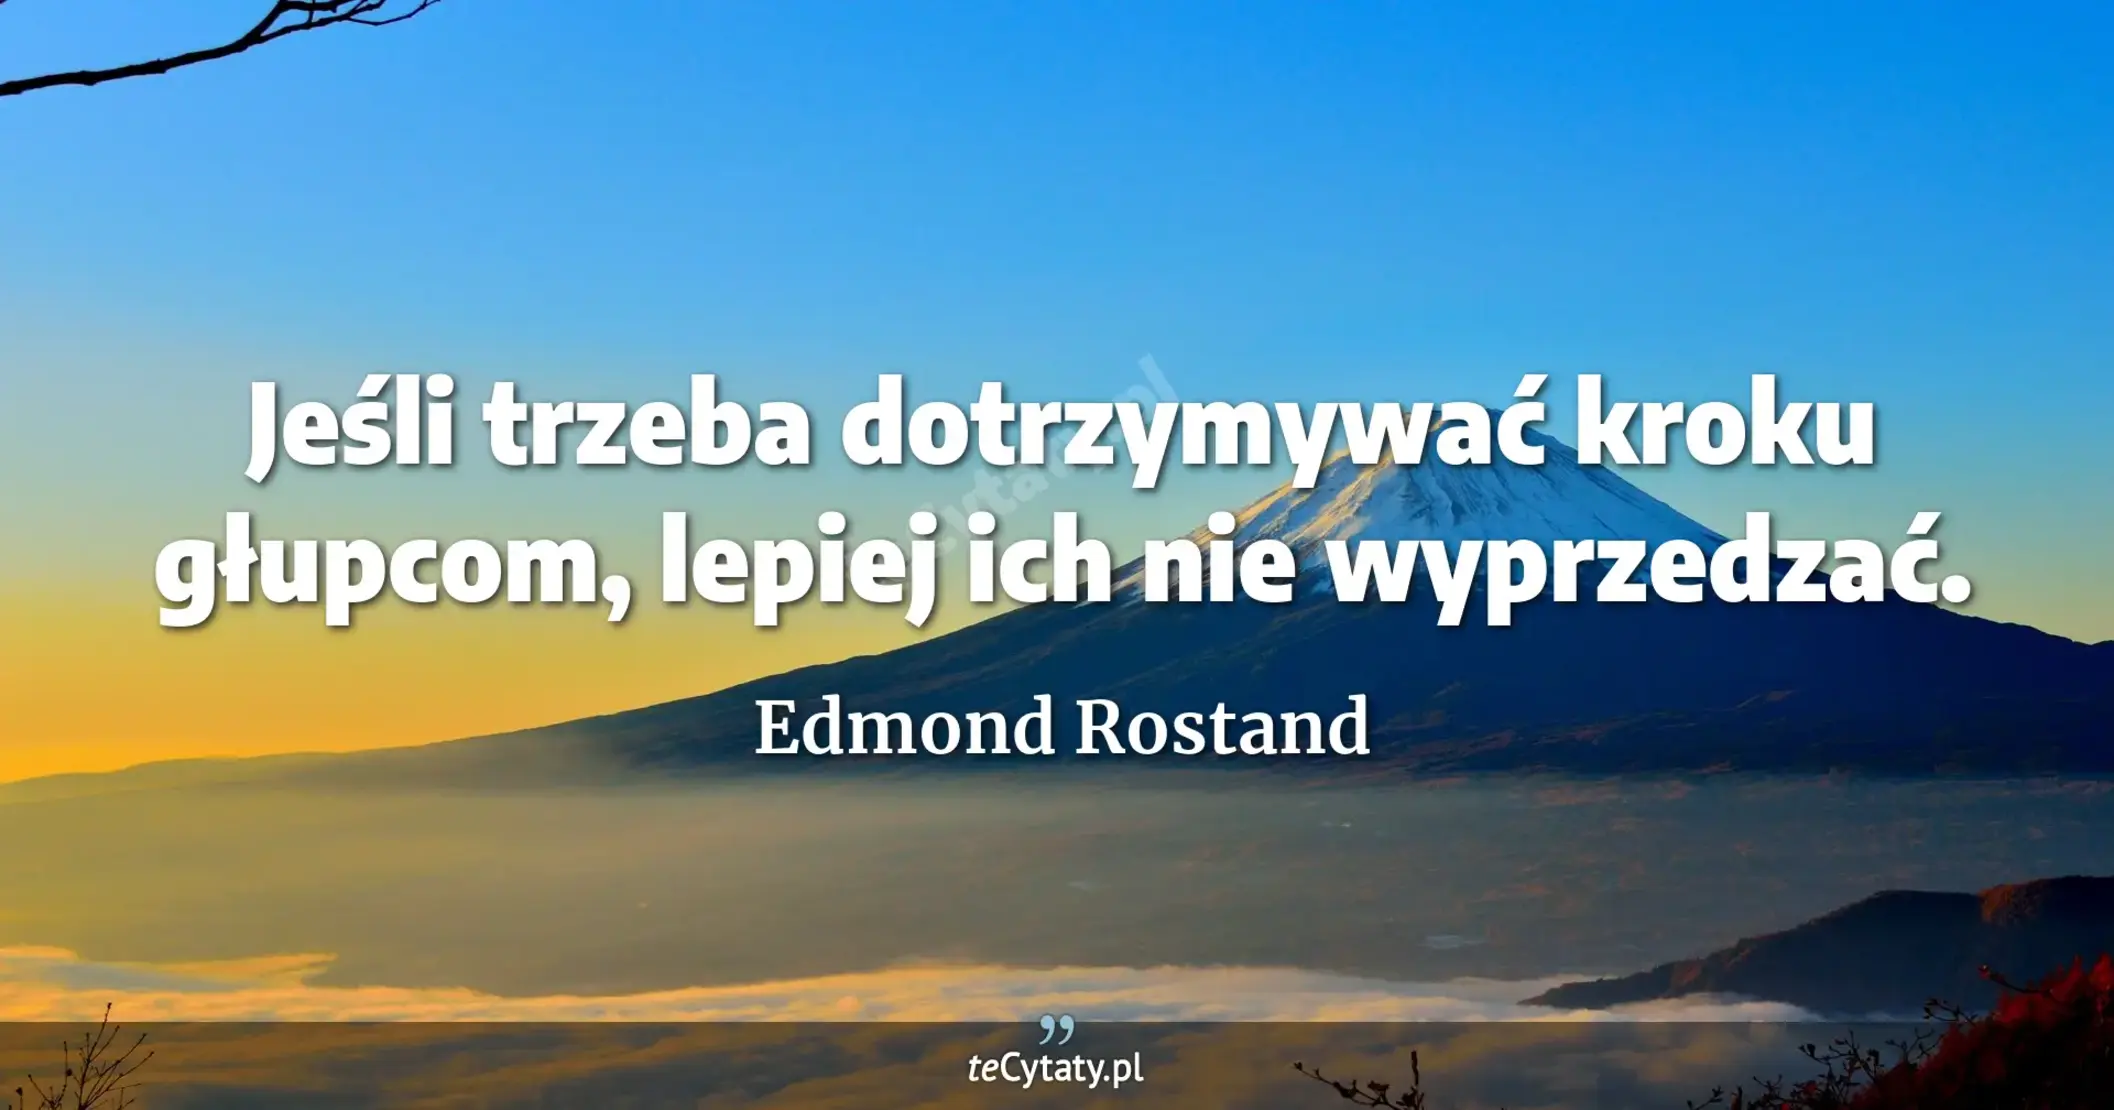 Jeśli trzeba dotrzymywać kroku głupcom, lepiej ich nie wyprzedzać. - Edmond Rostand